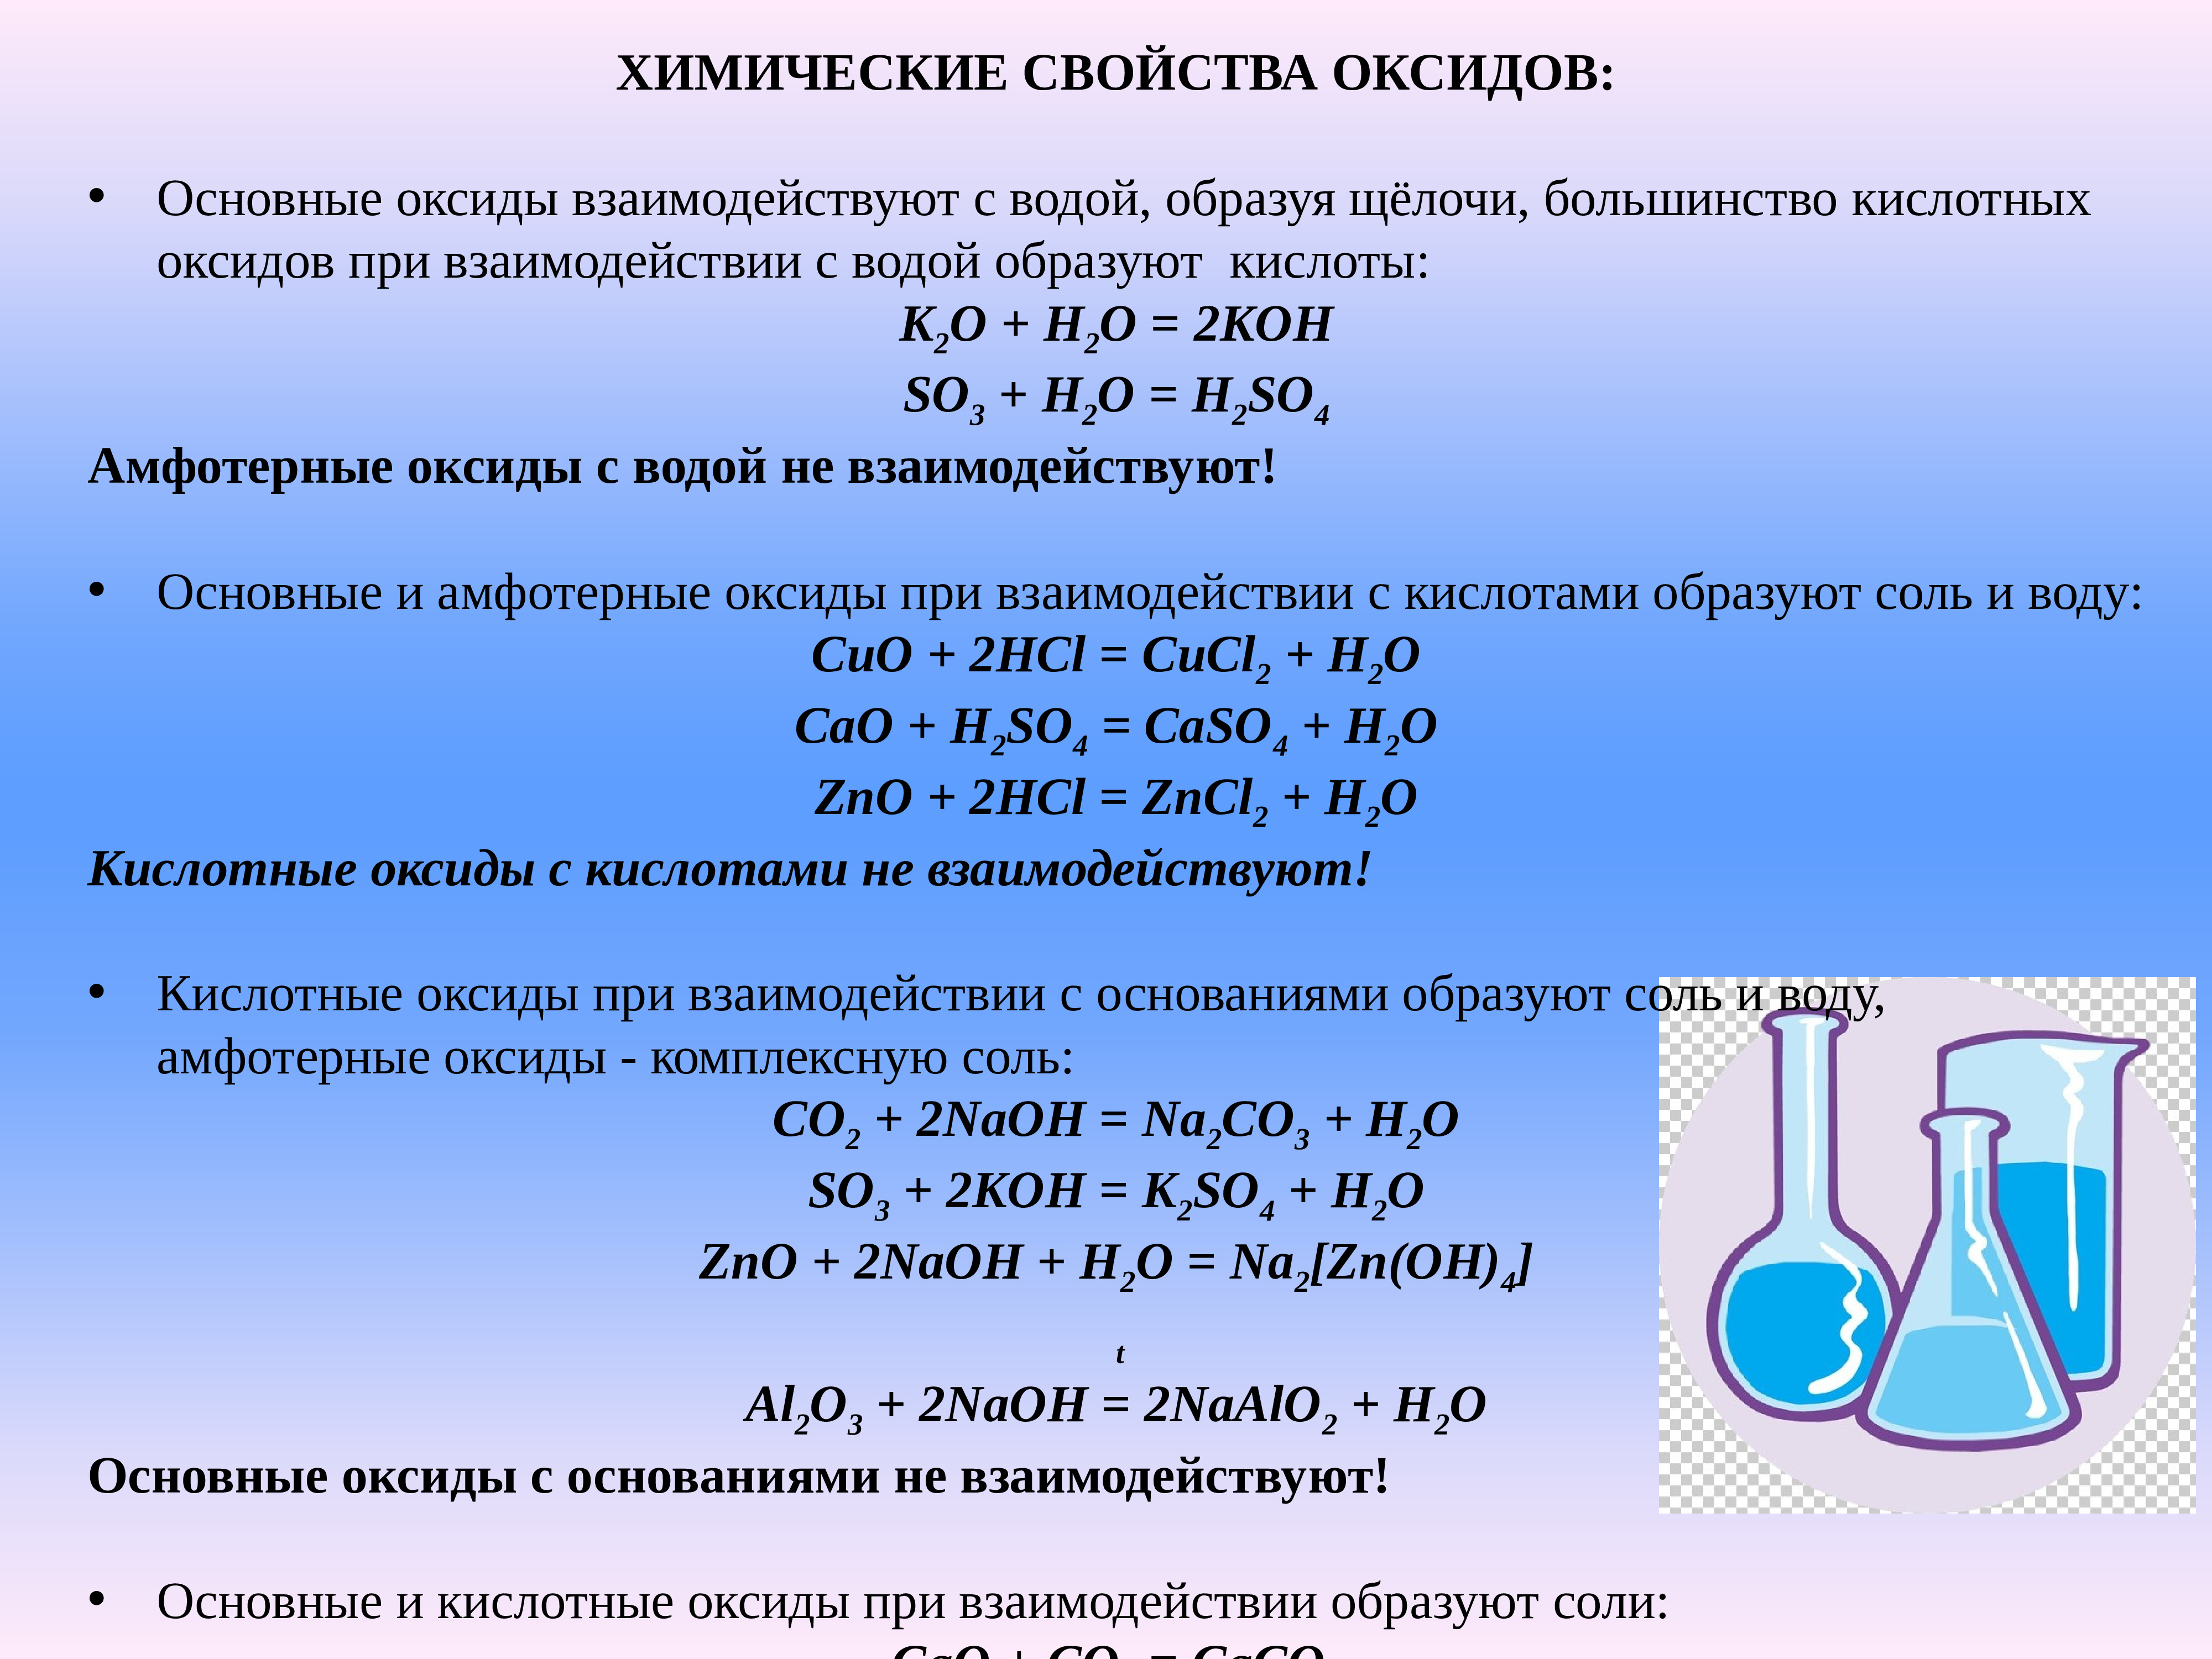 K2co3 класс неорганических соединений. Основные классы неорганических соединений презентация. Схема взаимодействия неорганических веществ. Классы неорганических соединений презентация. Номенклатура классов неорганических веществ.